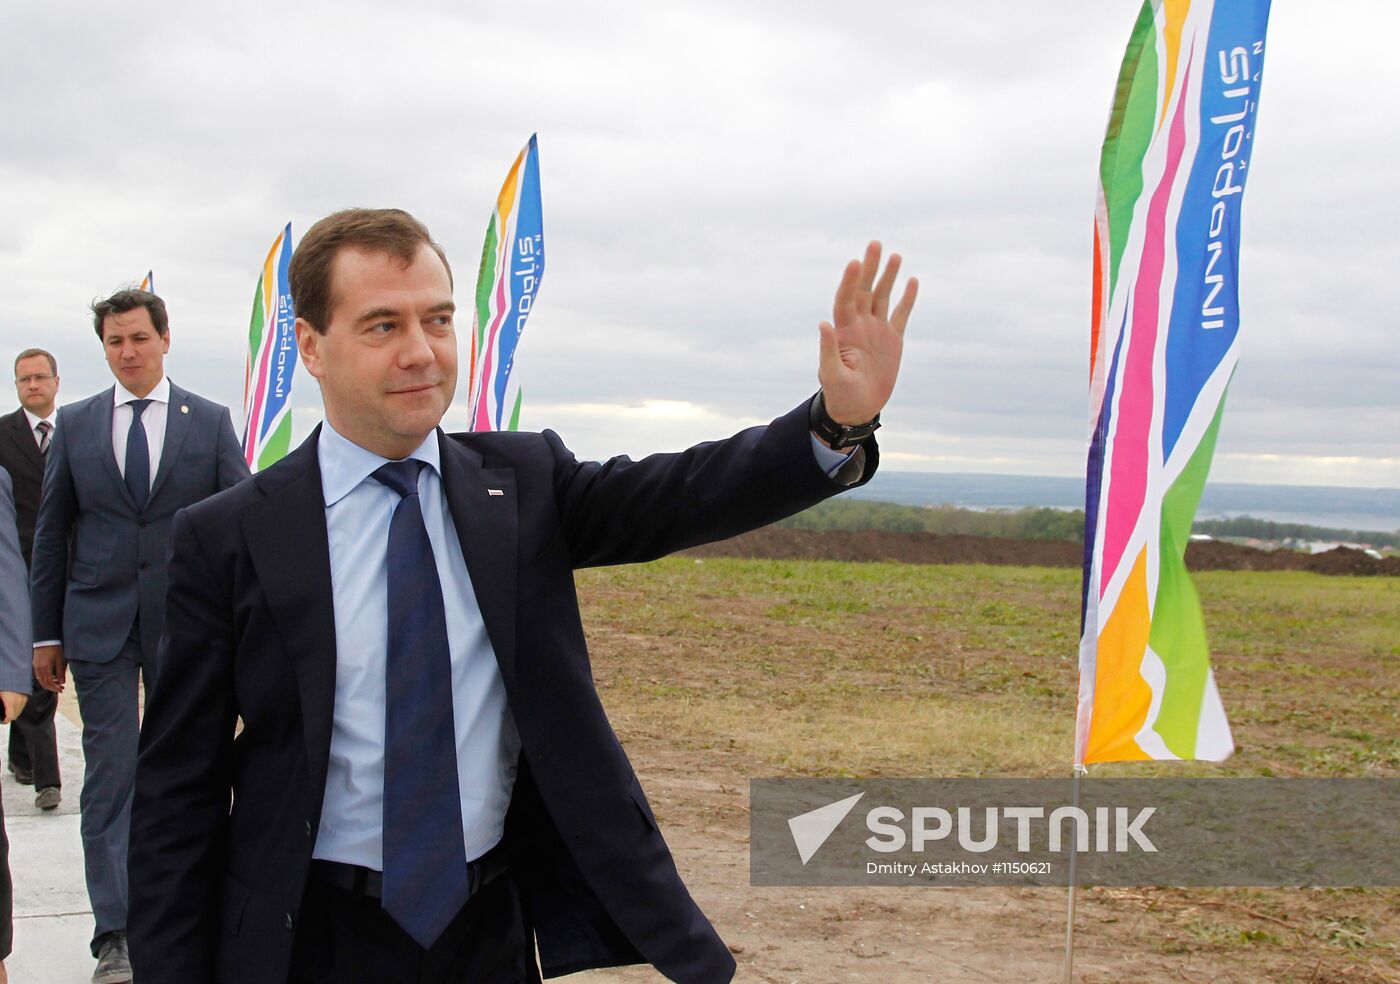 Dmitry Medvedev visits Kazan